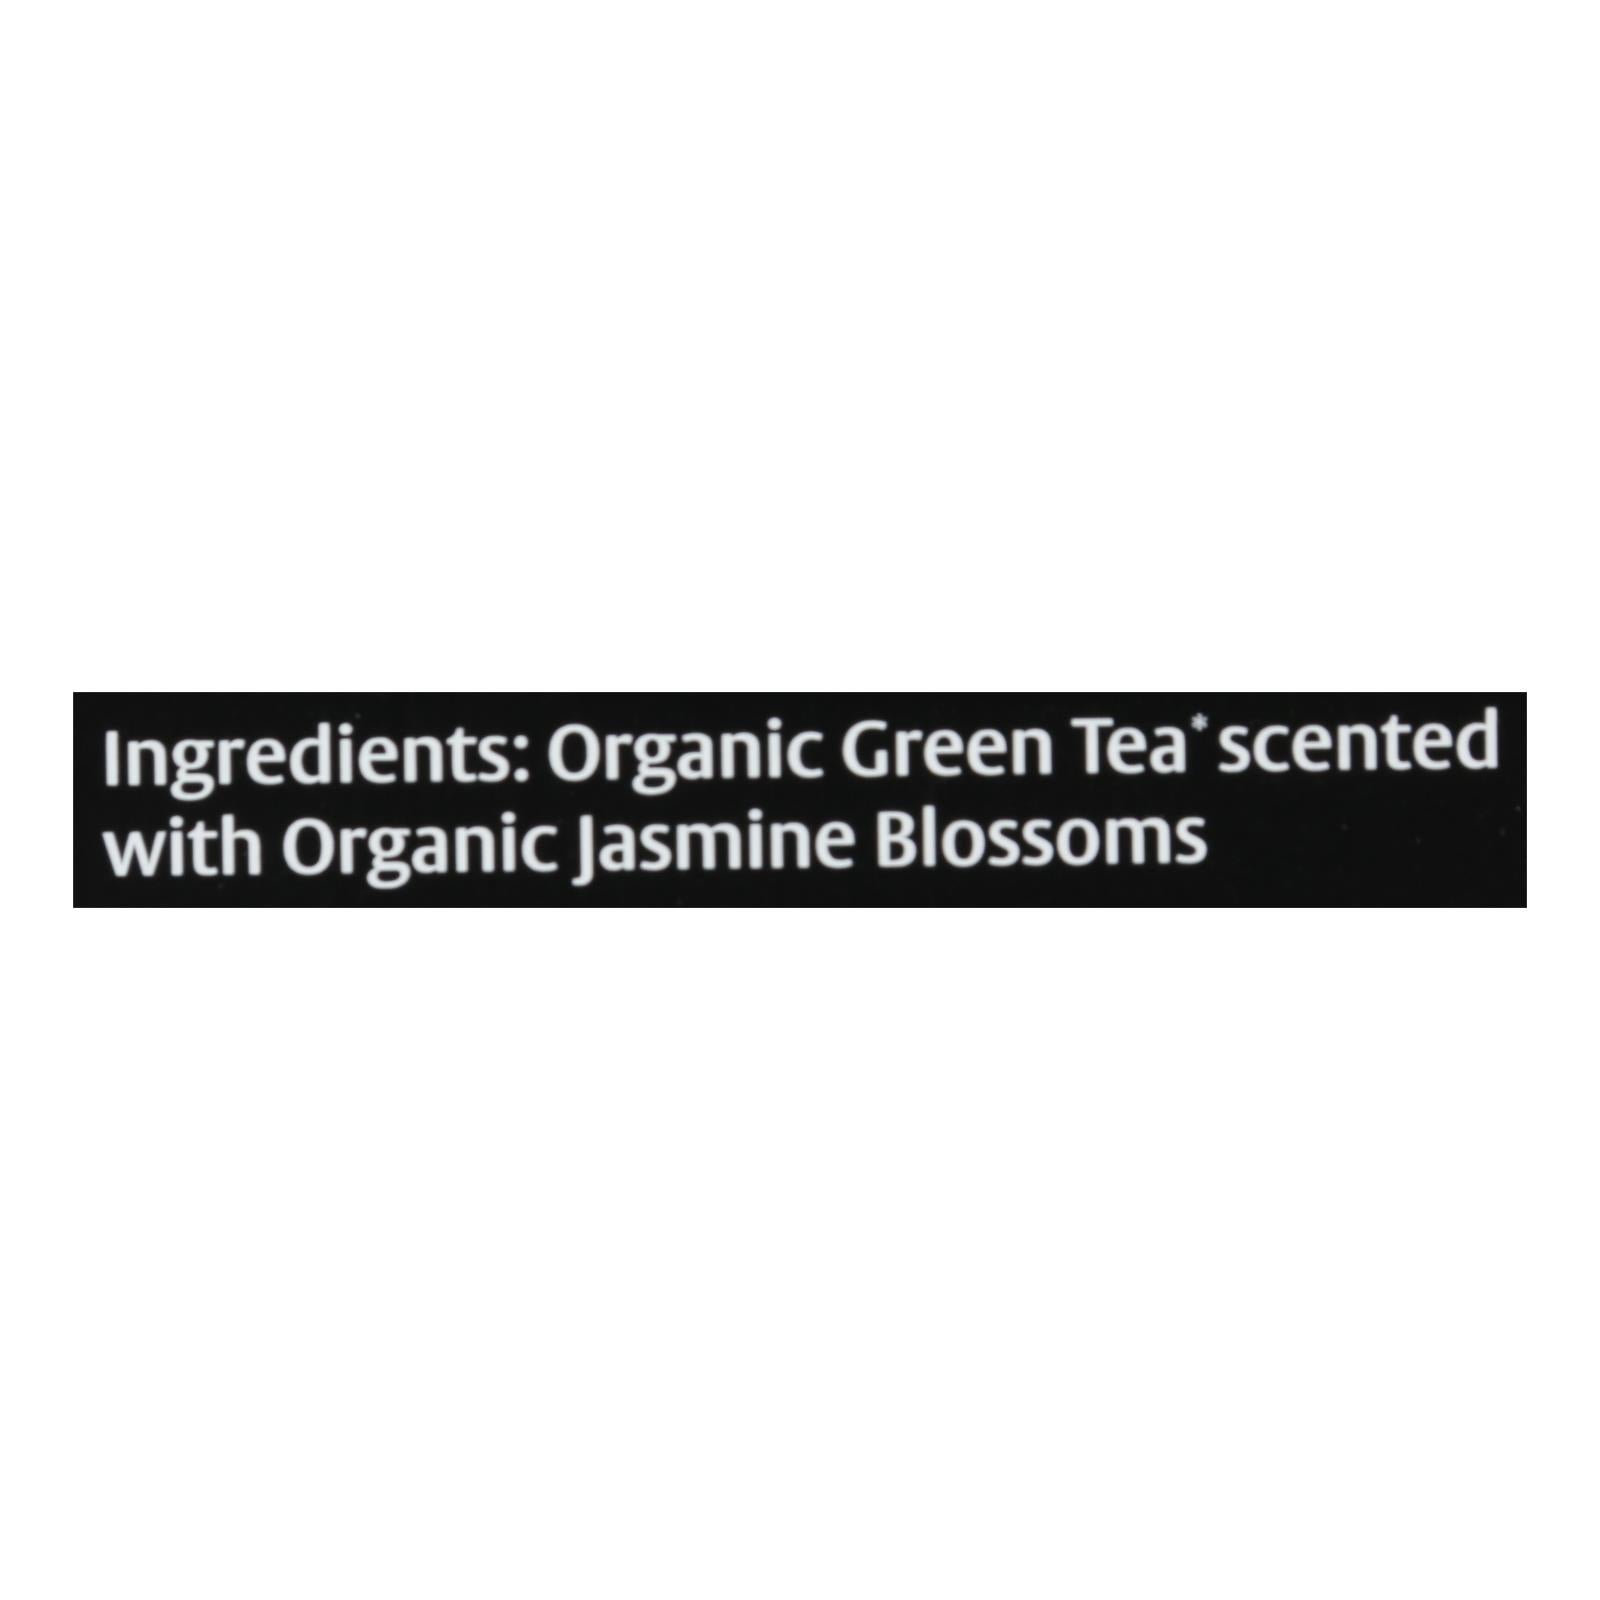 Choice Organic Teas Jasmine Green Tea - 16 Tea Bags - Case Of 6